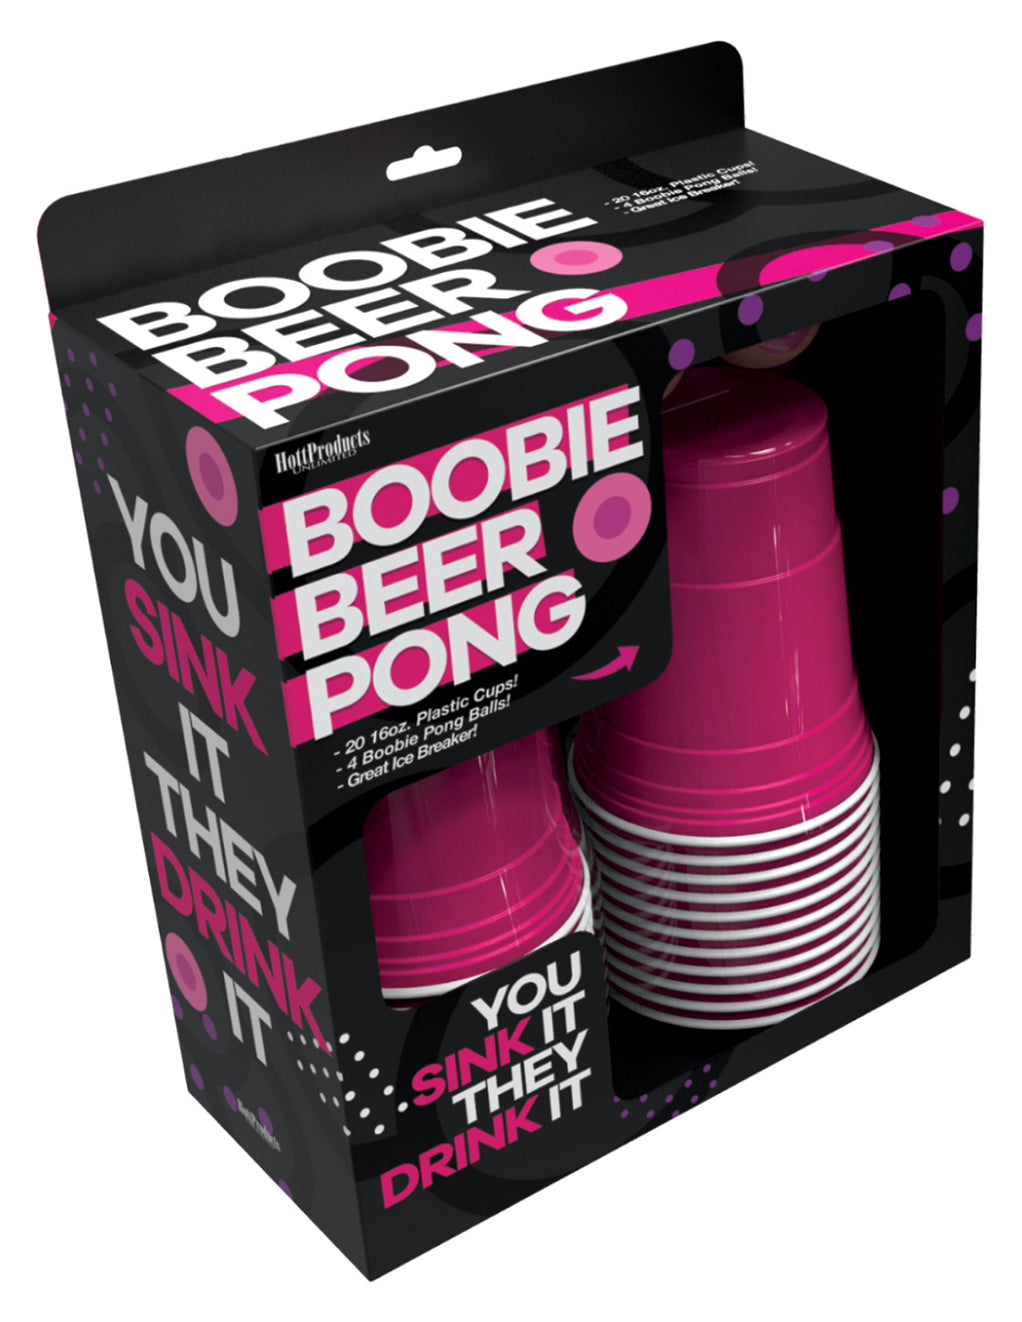 Boobie Beer Pong Set- Package